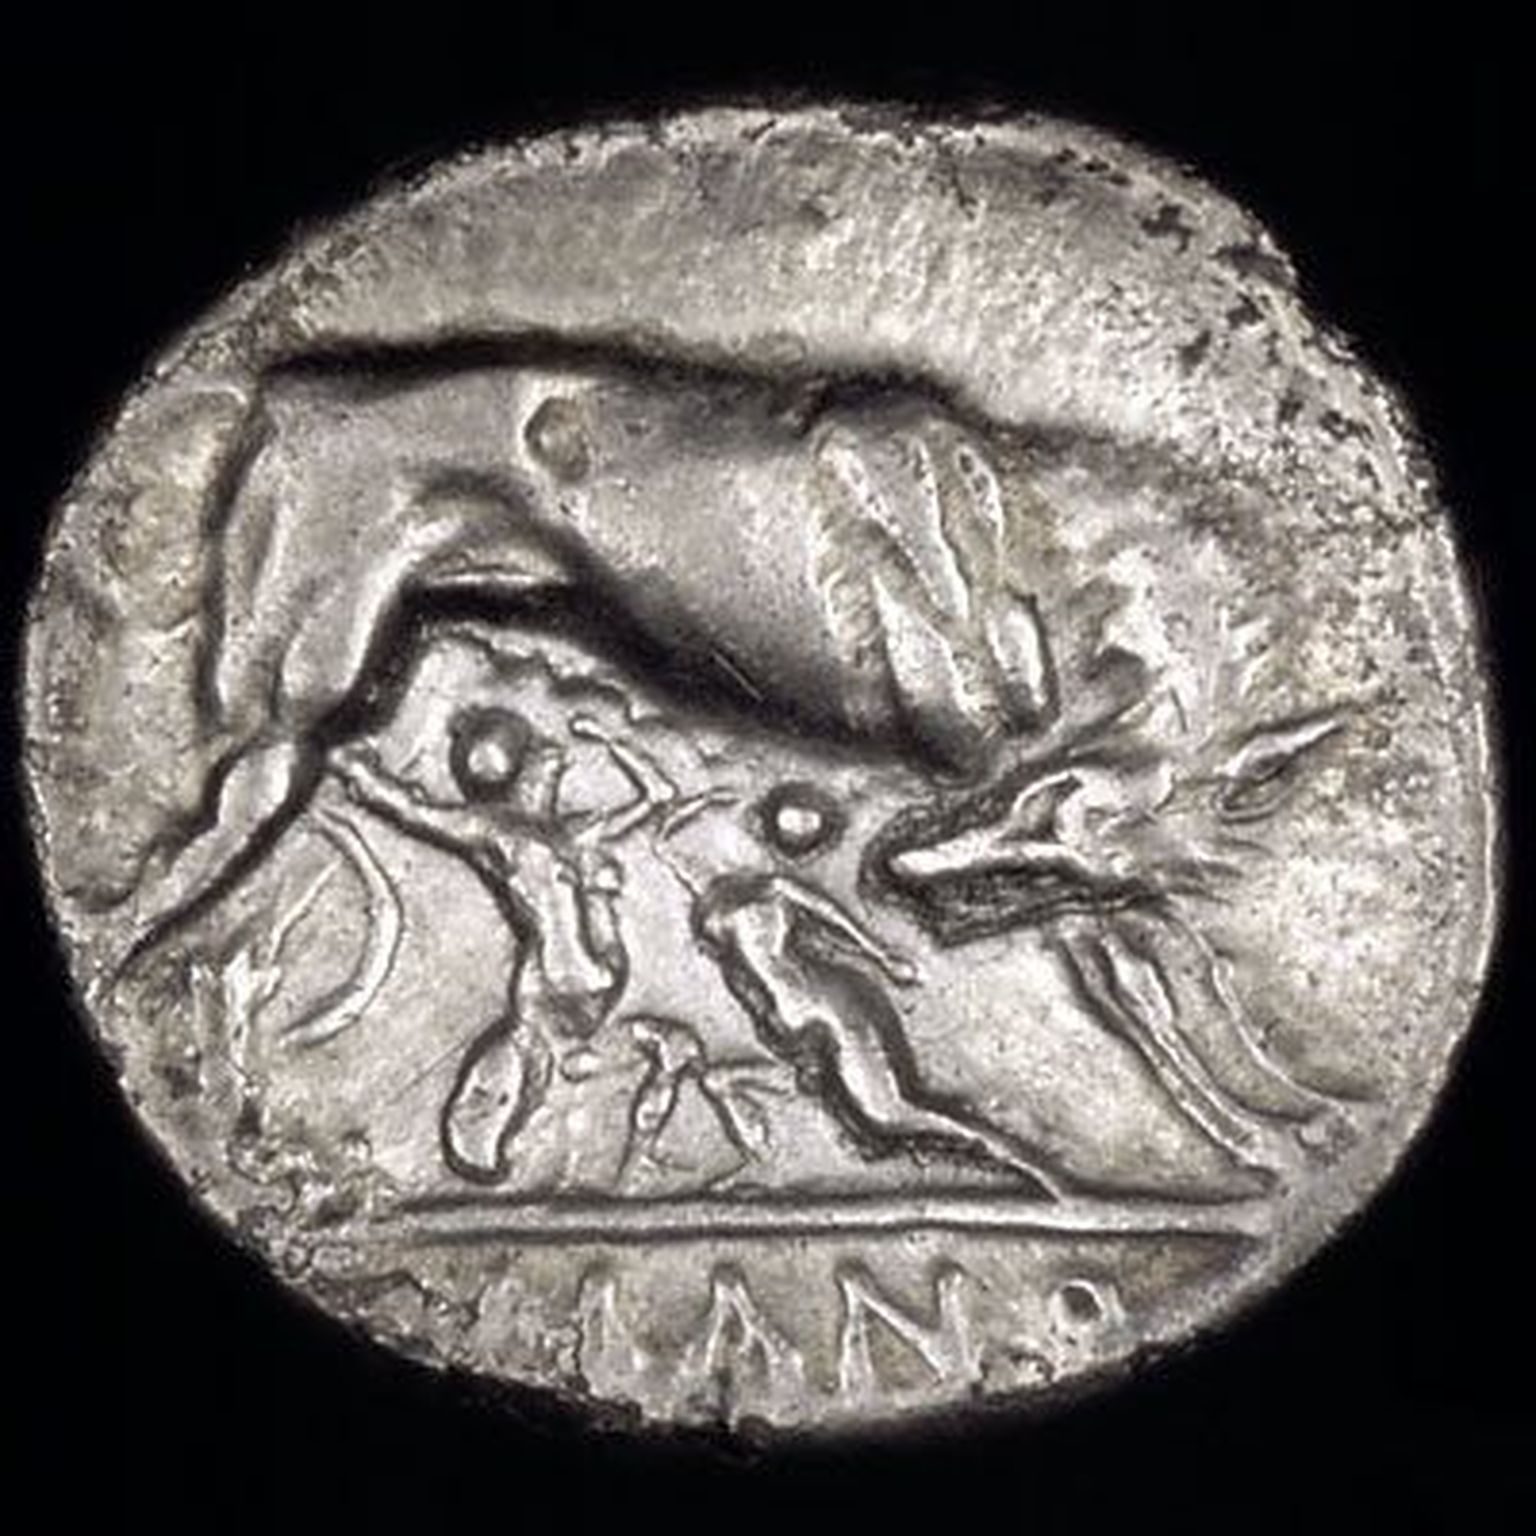 Emahunti, Romulust ja Remust kujutava ning kolmandast sajandist pärineva mündi revers.